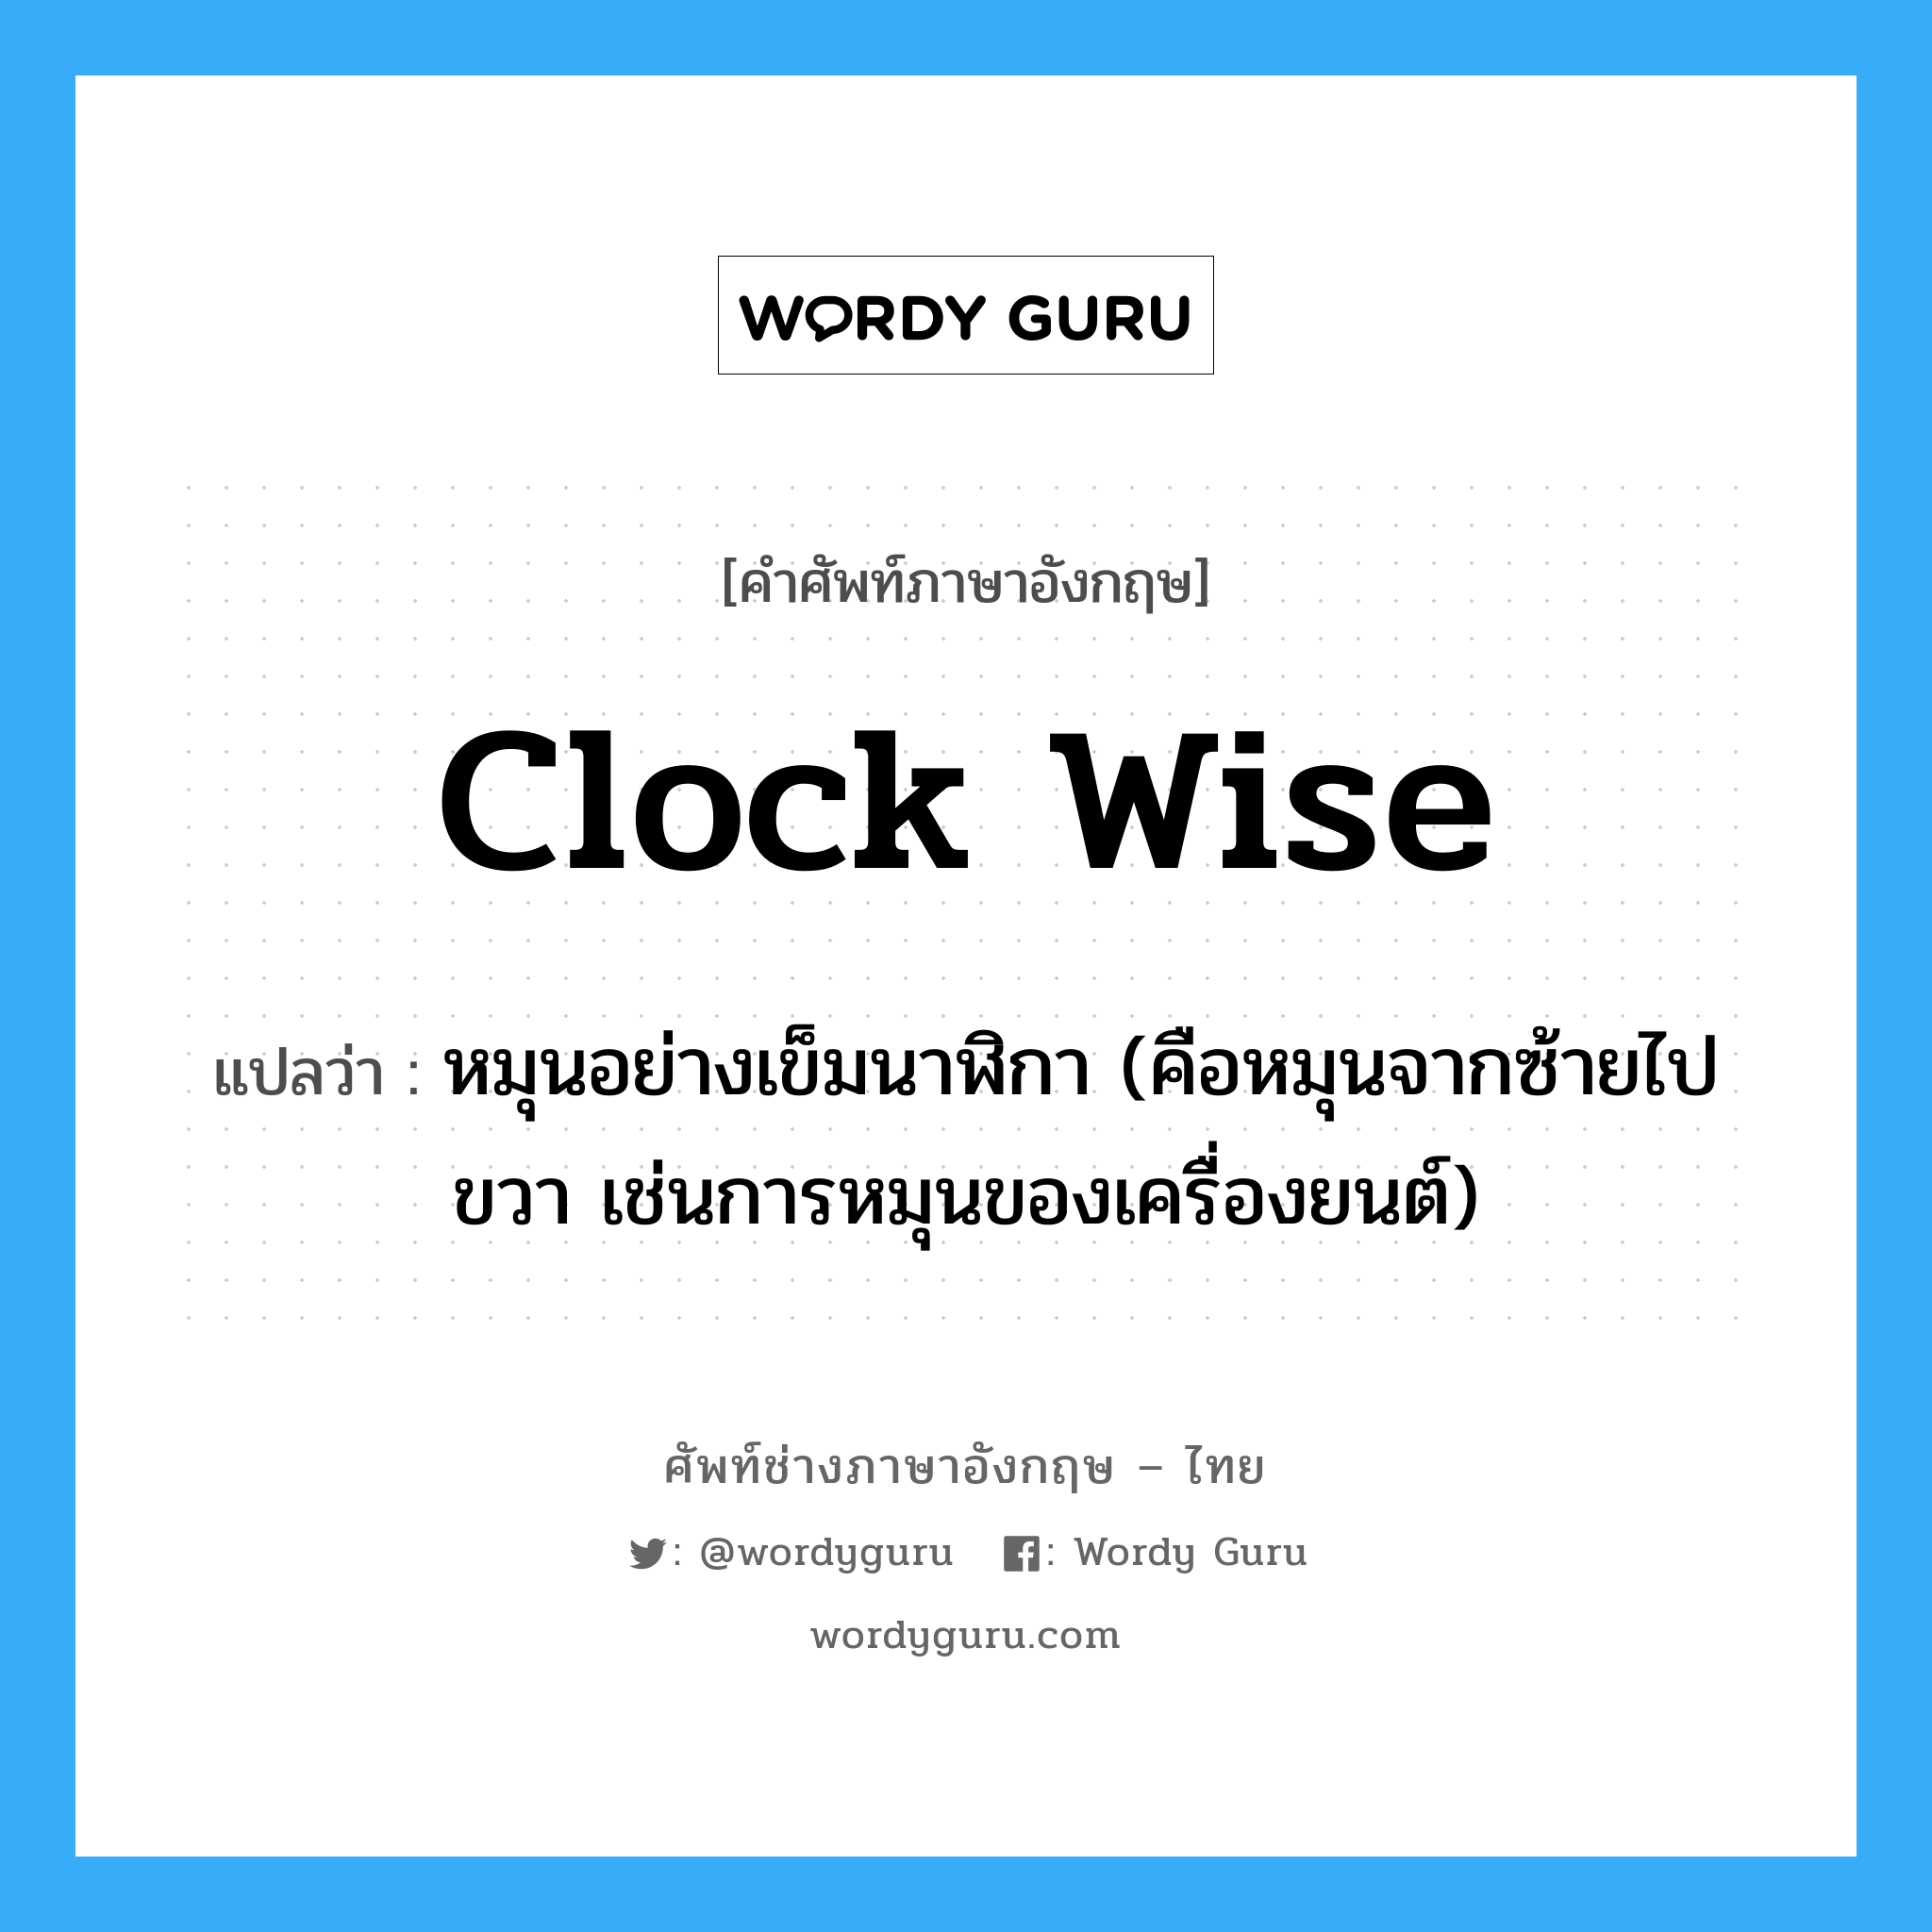 clock wise แปลว่า?, คำศัพท์ช่างภาษาอังกฤษ - ไทย clock wise คำศัพท์ภาษาอังกฤษ clock wise แปลว่า หมุนอย่างเข็มนาฬิกา (คือหมุนจากซ้ายไปขวา เช่นการหมุนของเครื่องยนต์)